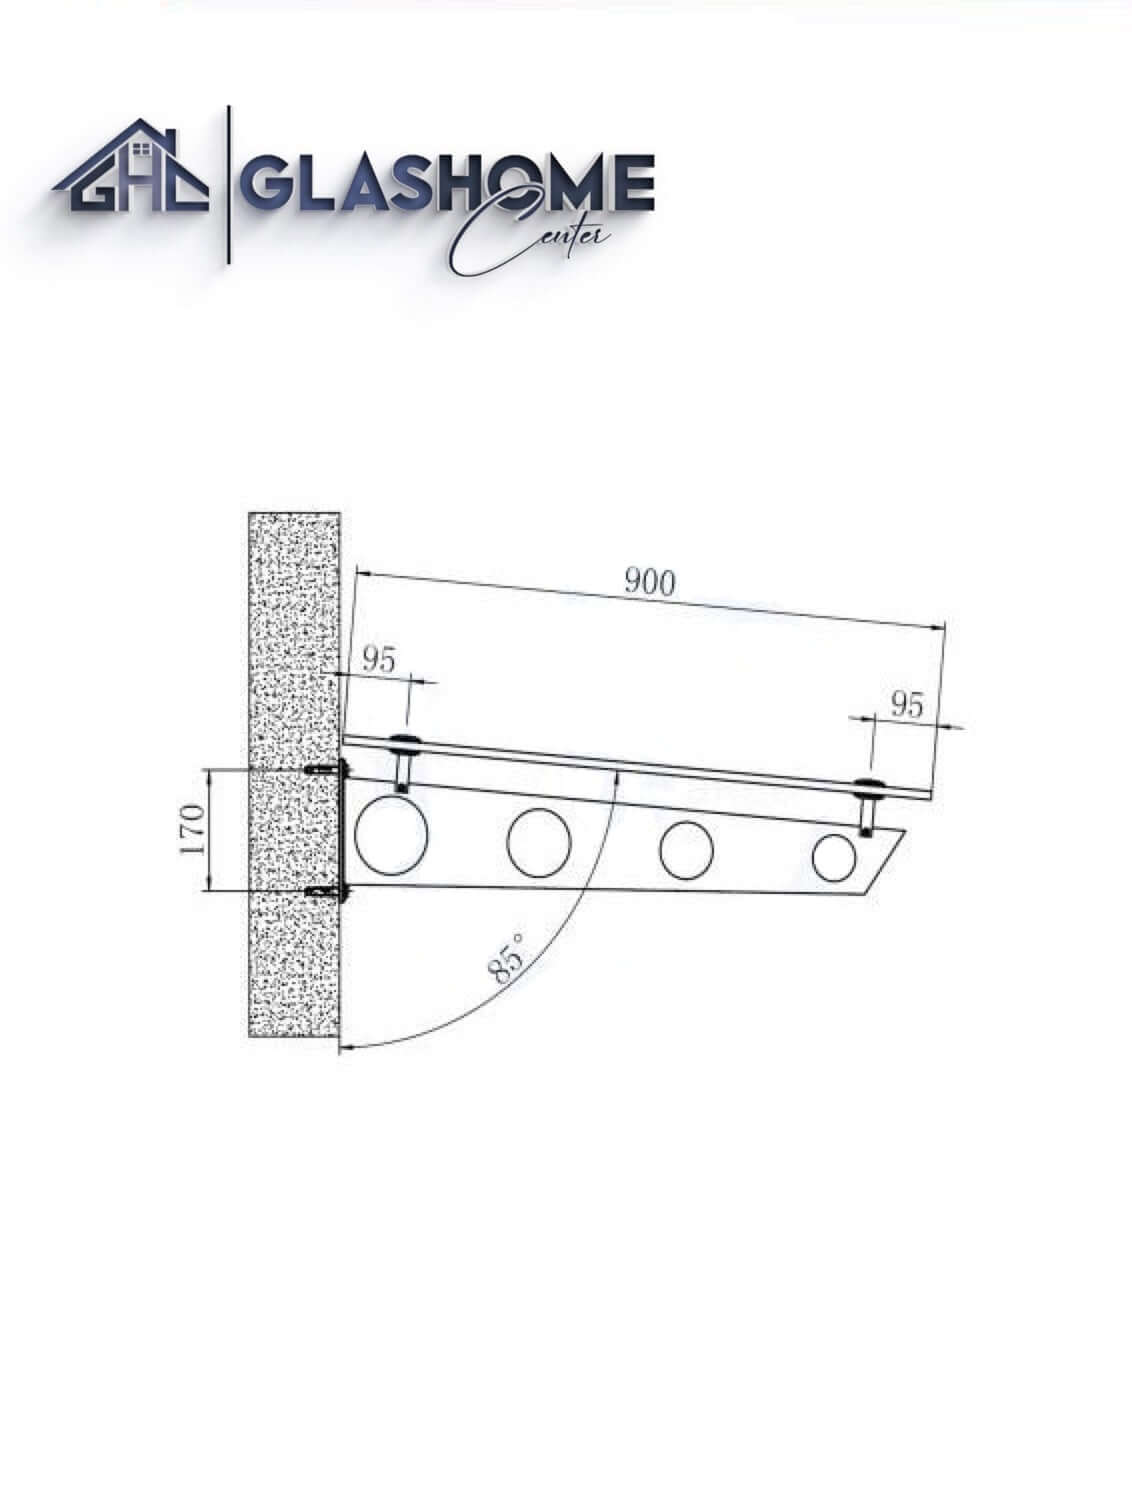 GlasHomeCenter - Glasvordach - Grauglas - 230x90cm - 13.1mm VSG - inkl. 3 schwarze Edelstahlhalterungen Variante "Stockholm"